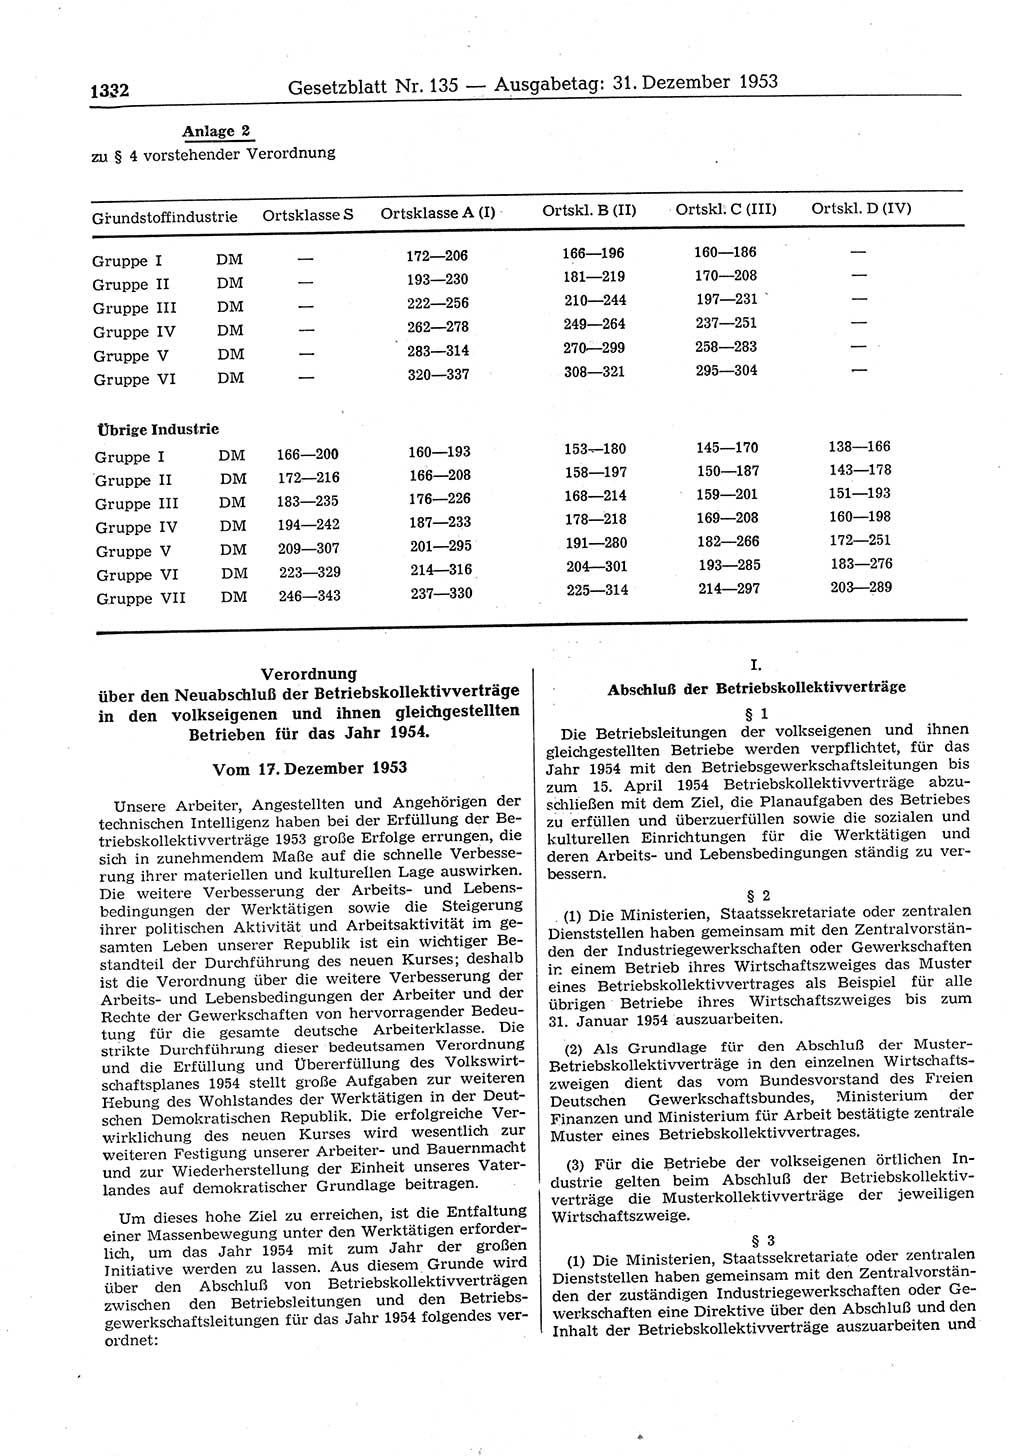 Gesetzblatt (GBl.) der Deutschen Demokratischen Republik (DDR) 1953, Seite 1332 (GBl. DDR 1953, S. 1332)